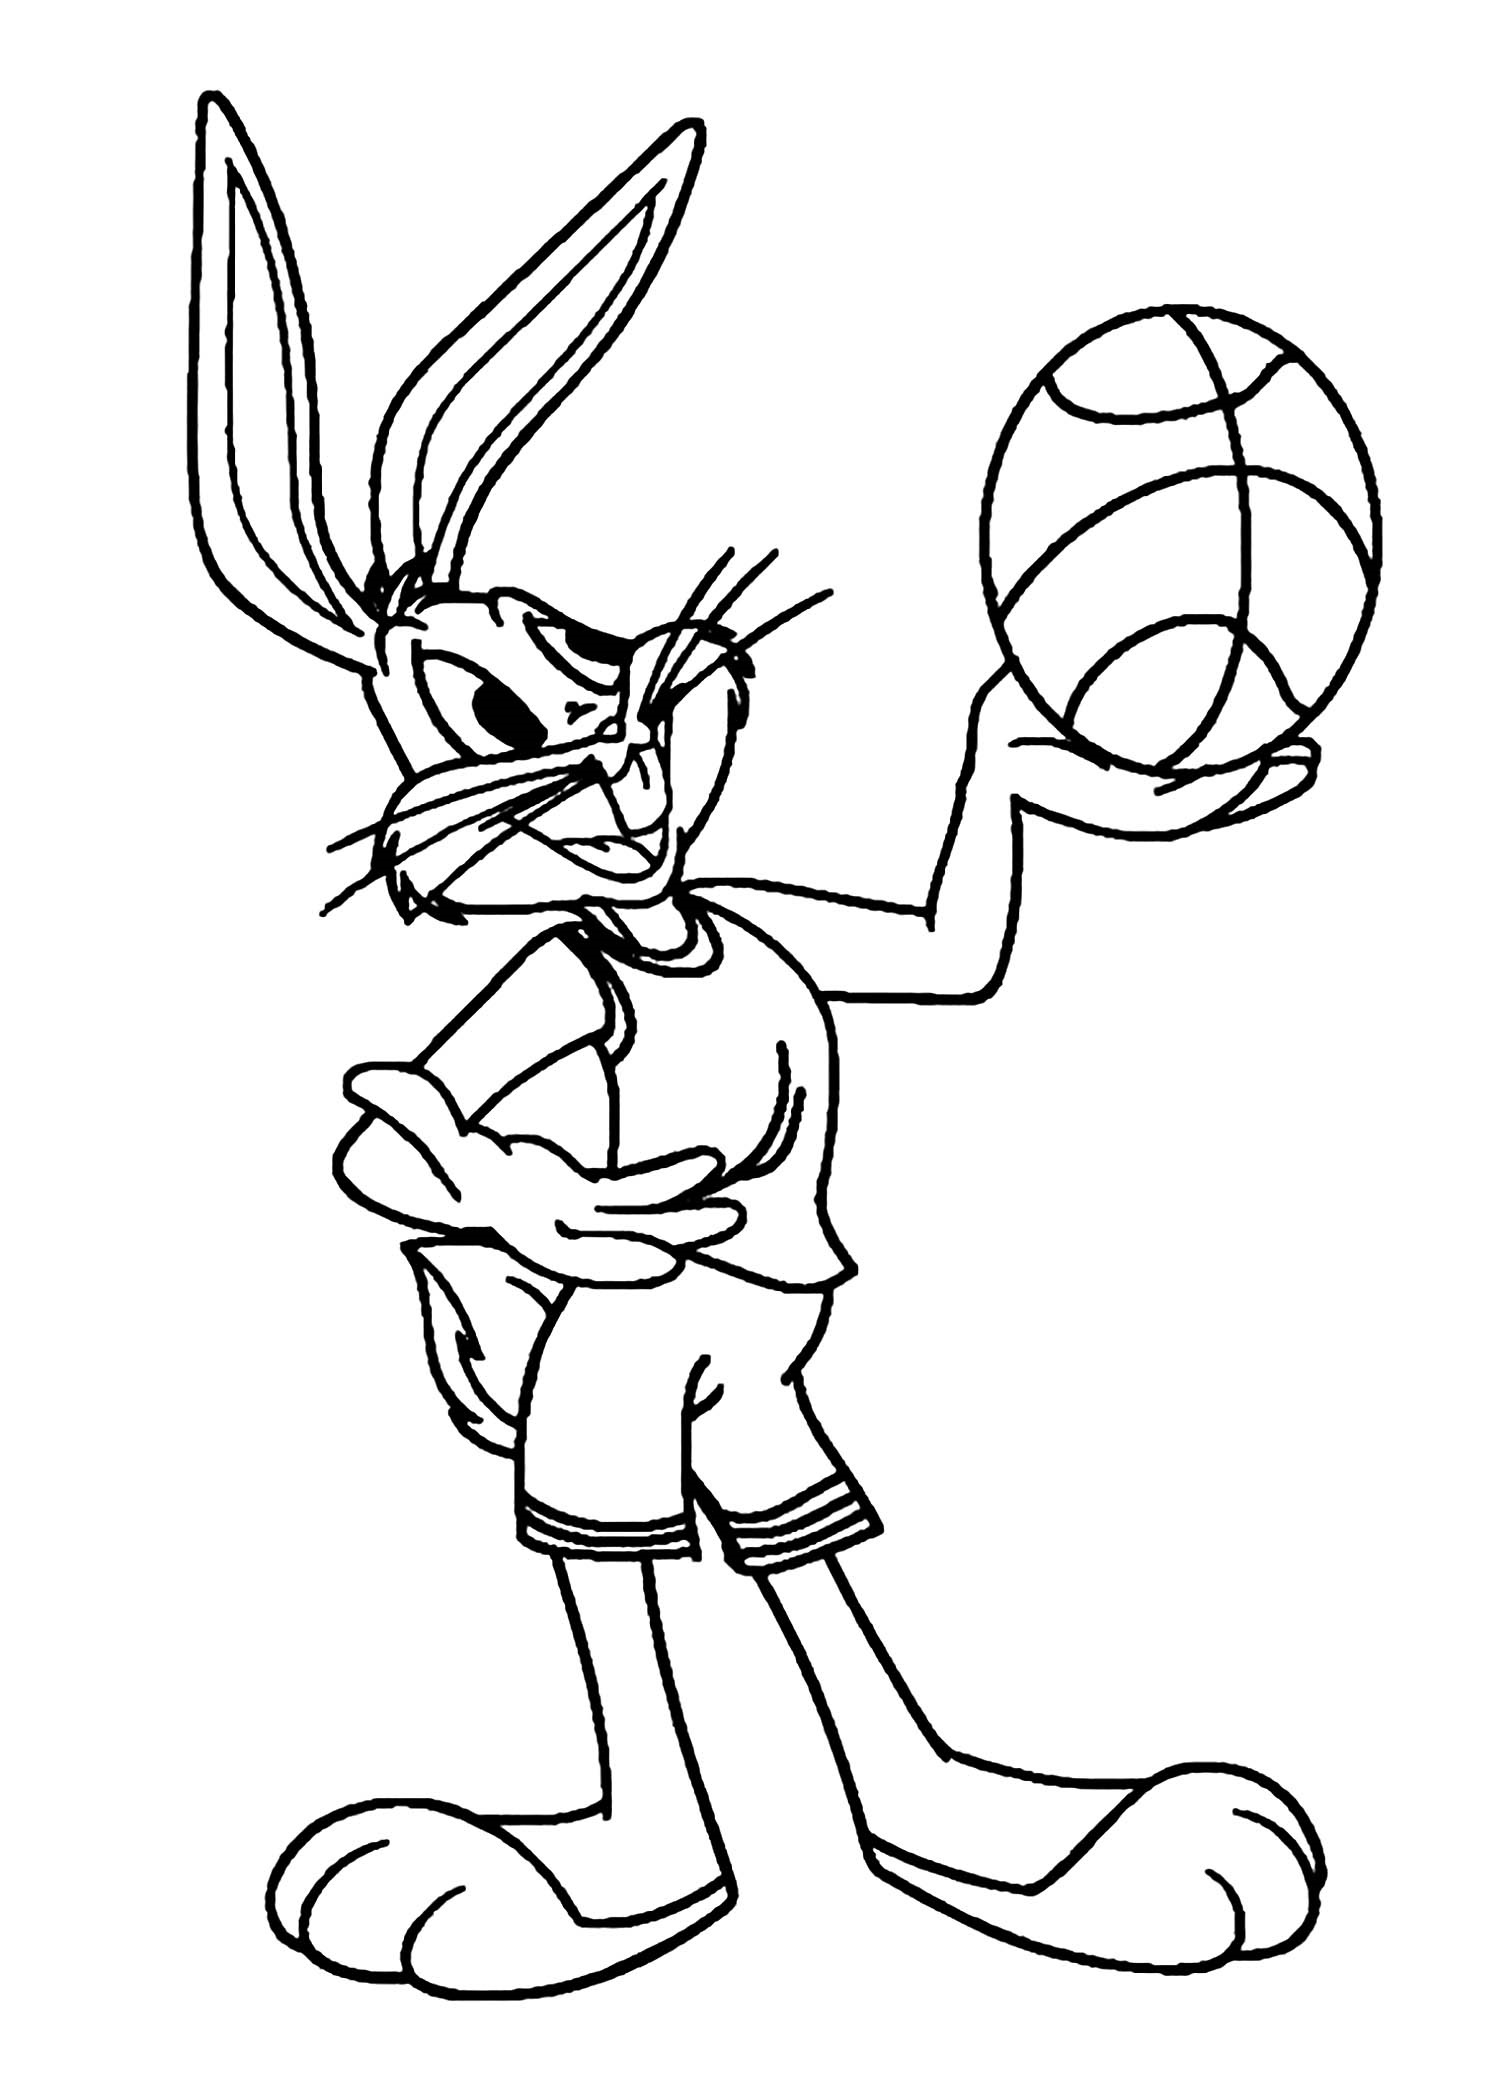 Basketball Coloring Sheets Rabbits